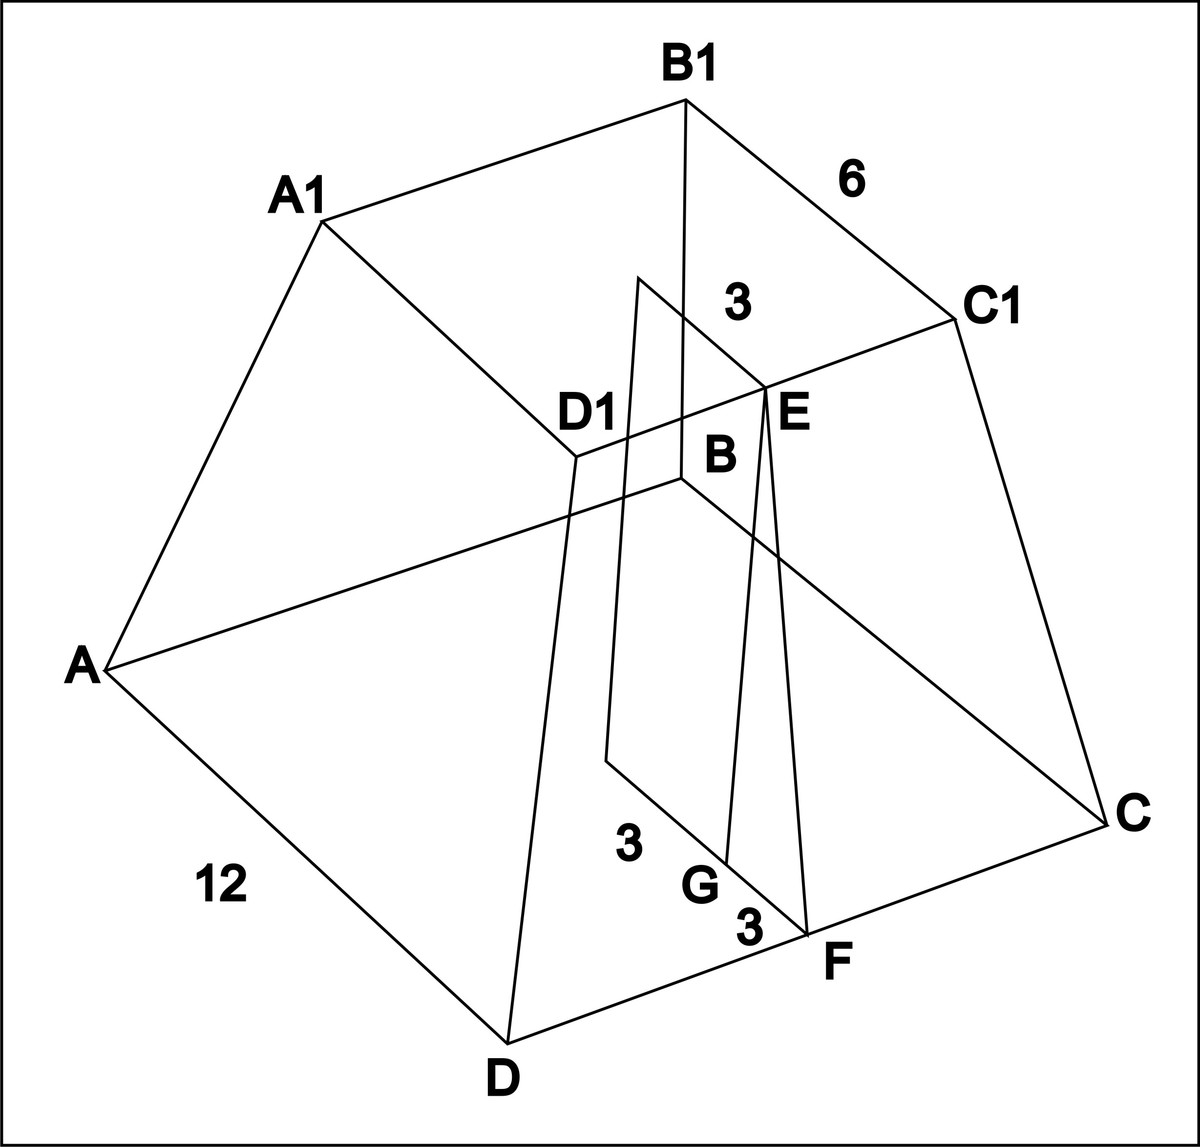 треугольная усеченная пирамида